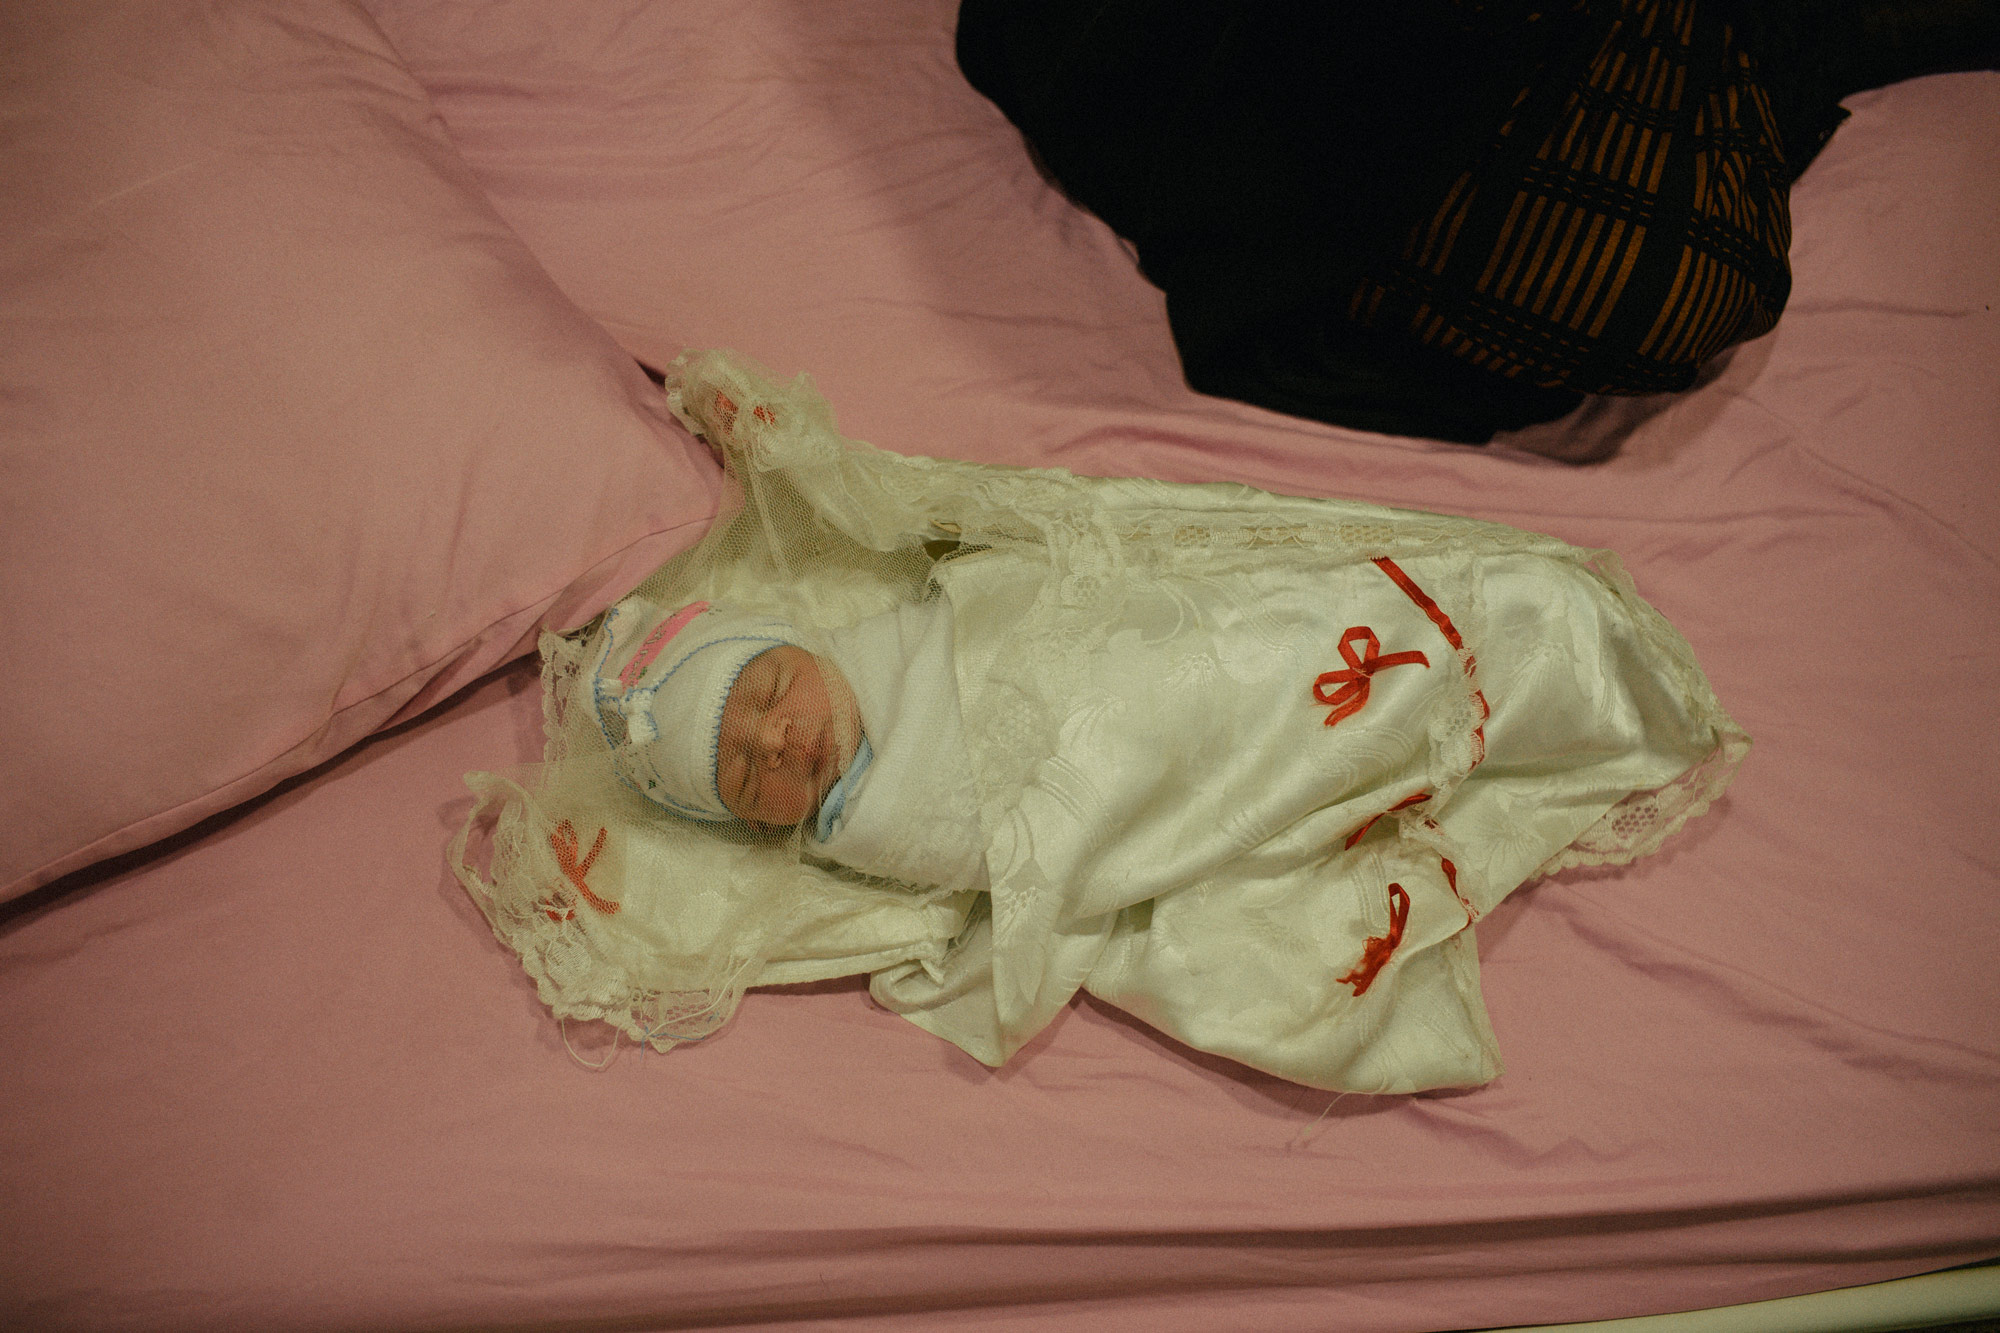 Iraq. Mosul. 17 September 2021. Newborn at MSF Nablus hospital.